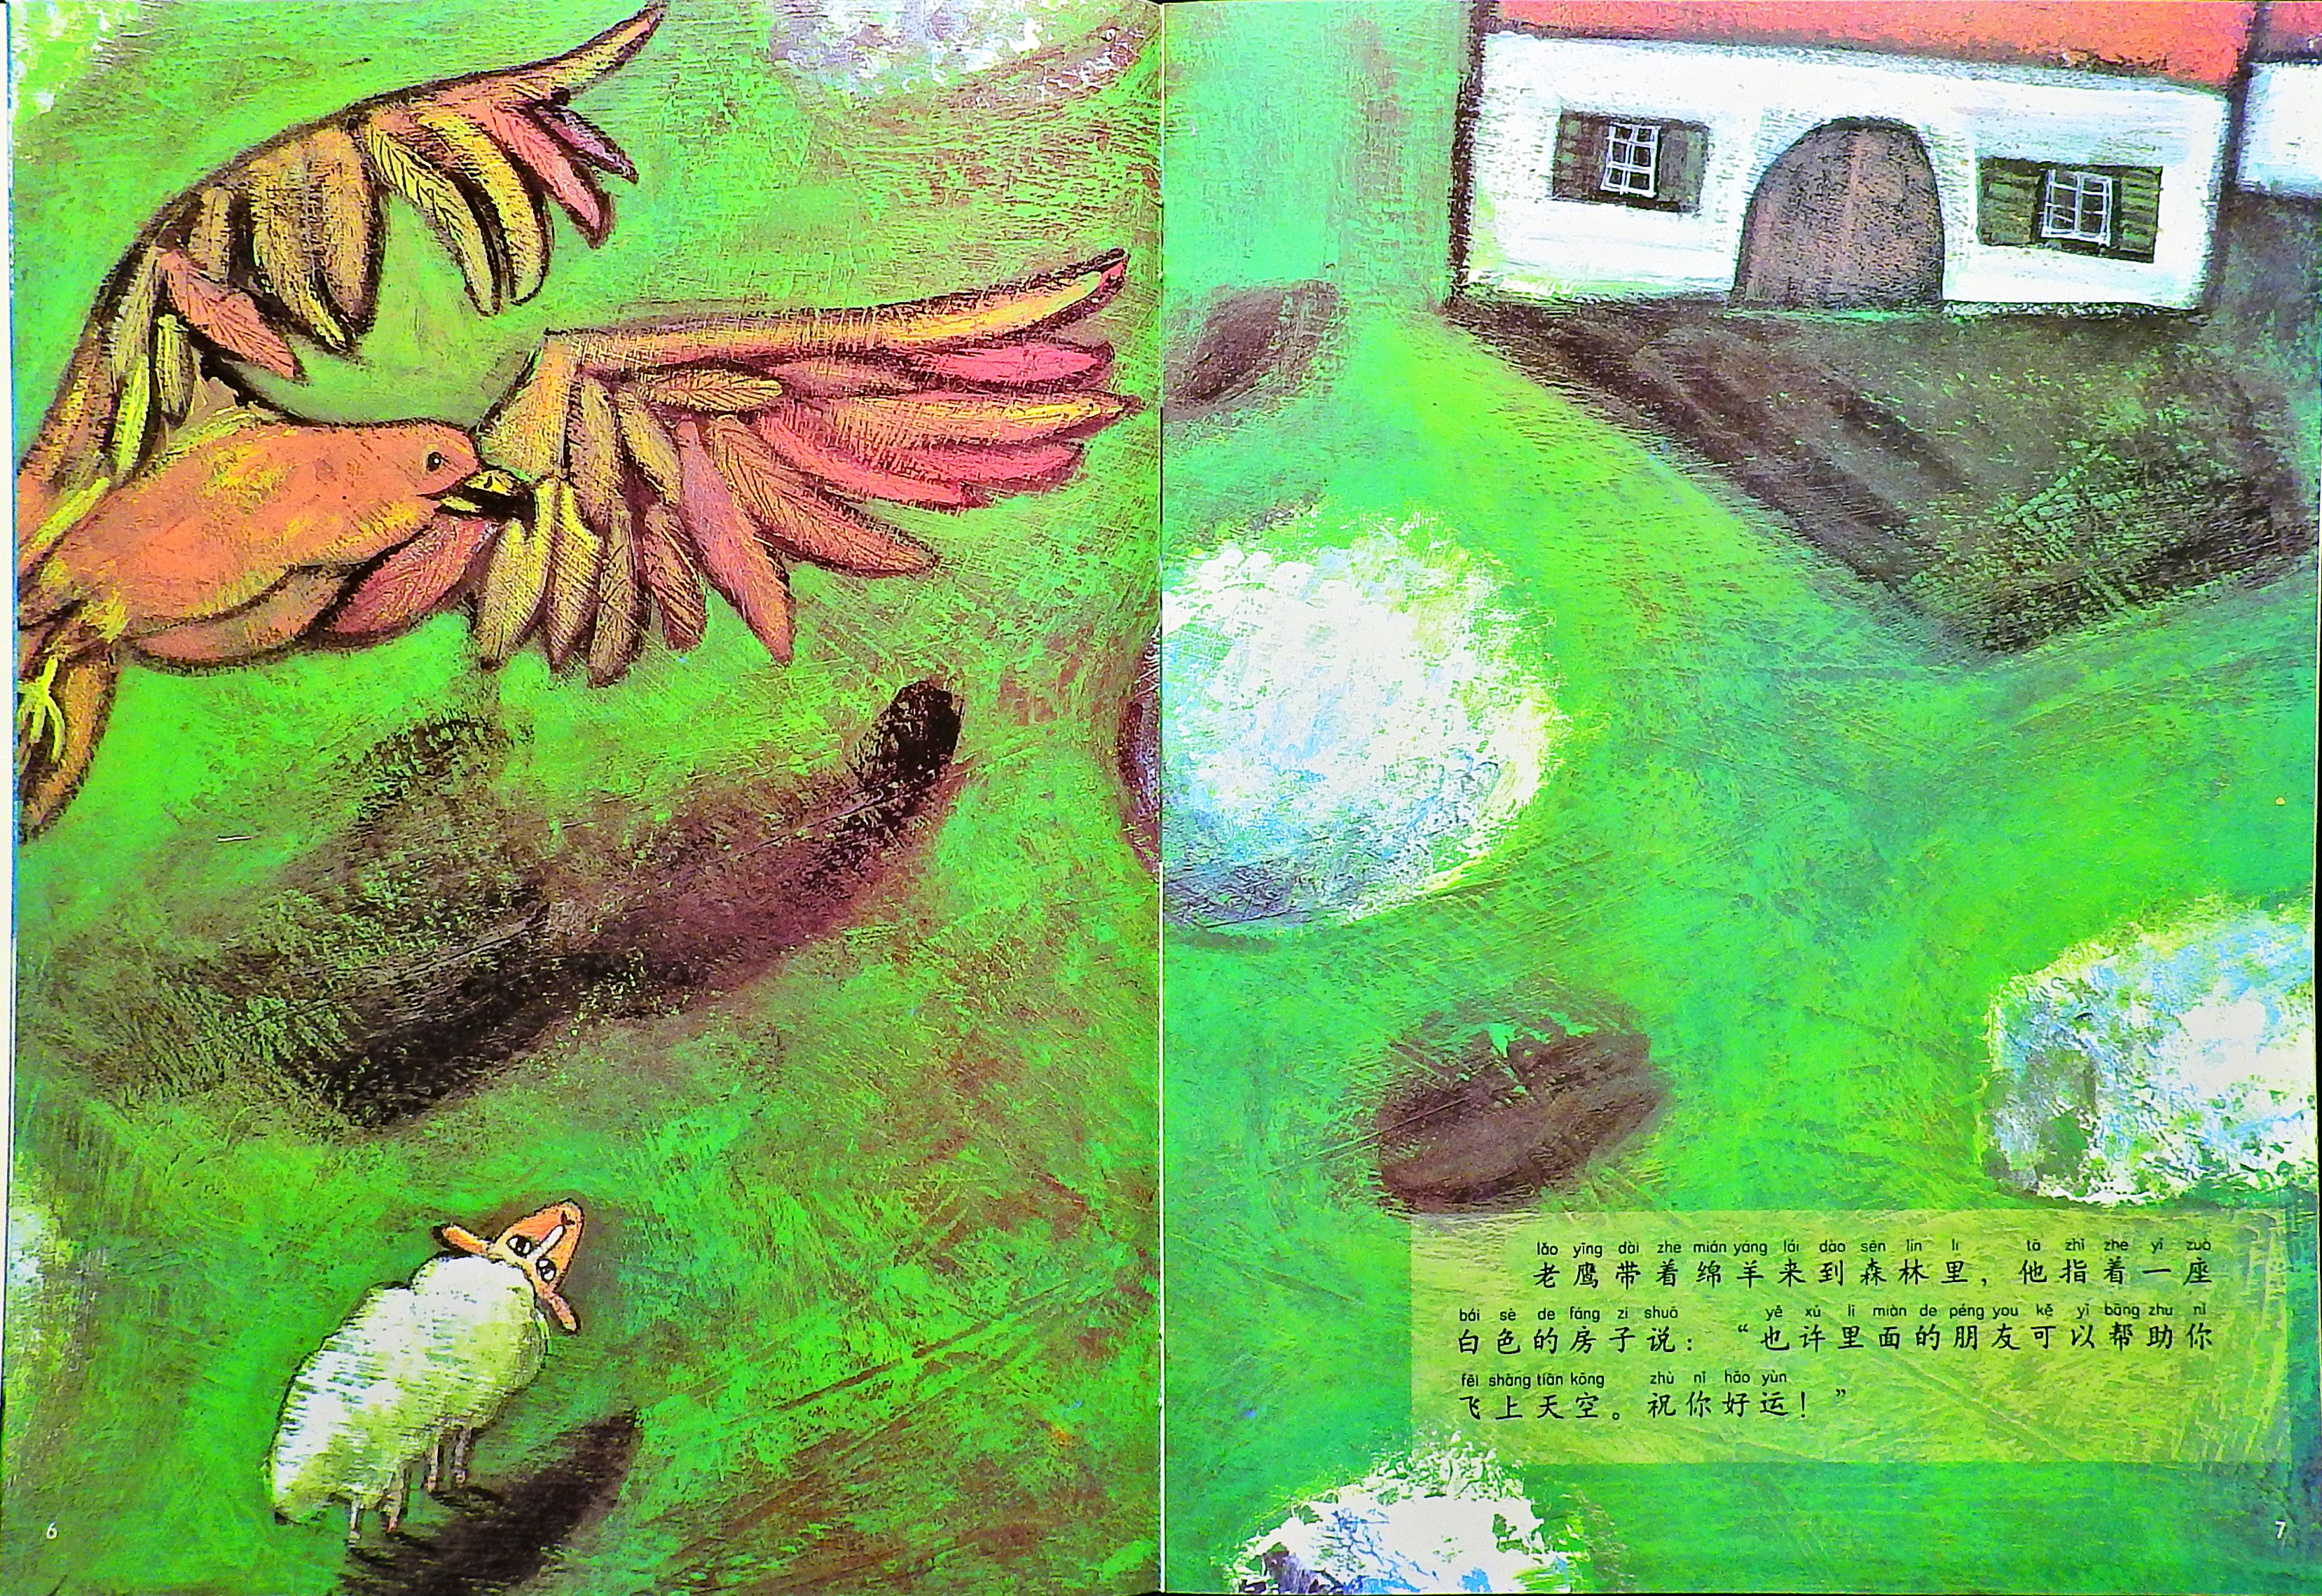 飞上天空的绵羊 (05),绘本,绘本故事,绘本阅读,故事书,童书,图画书,课外阅读